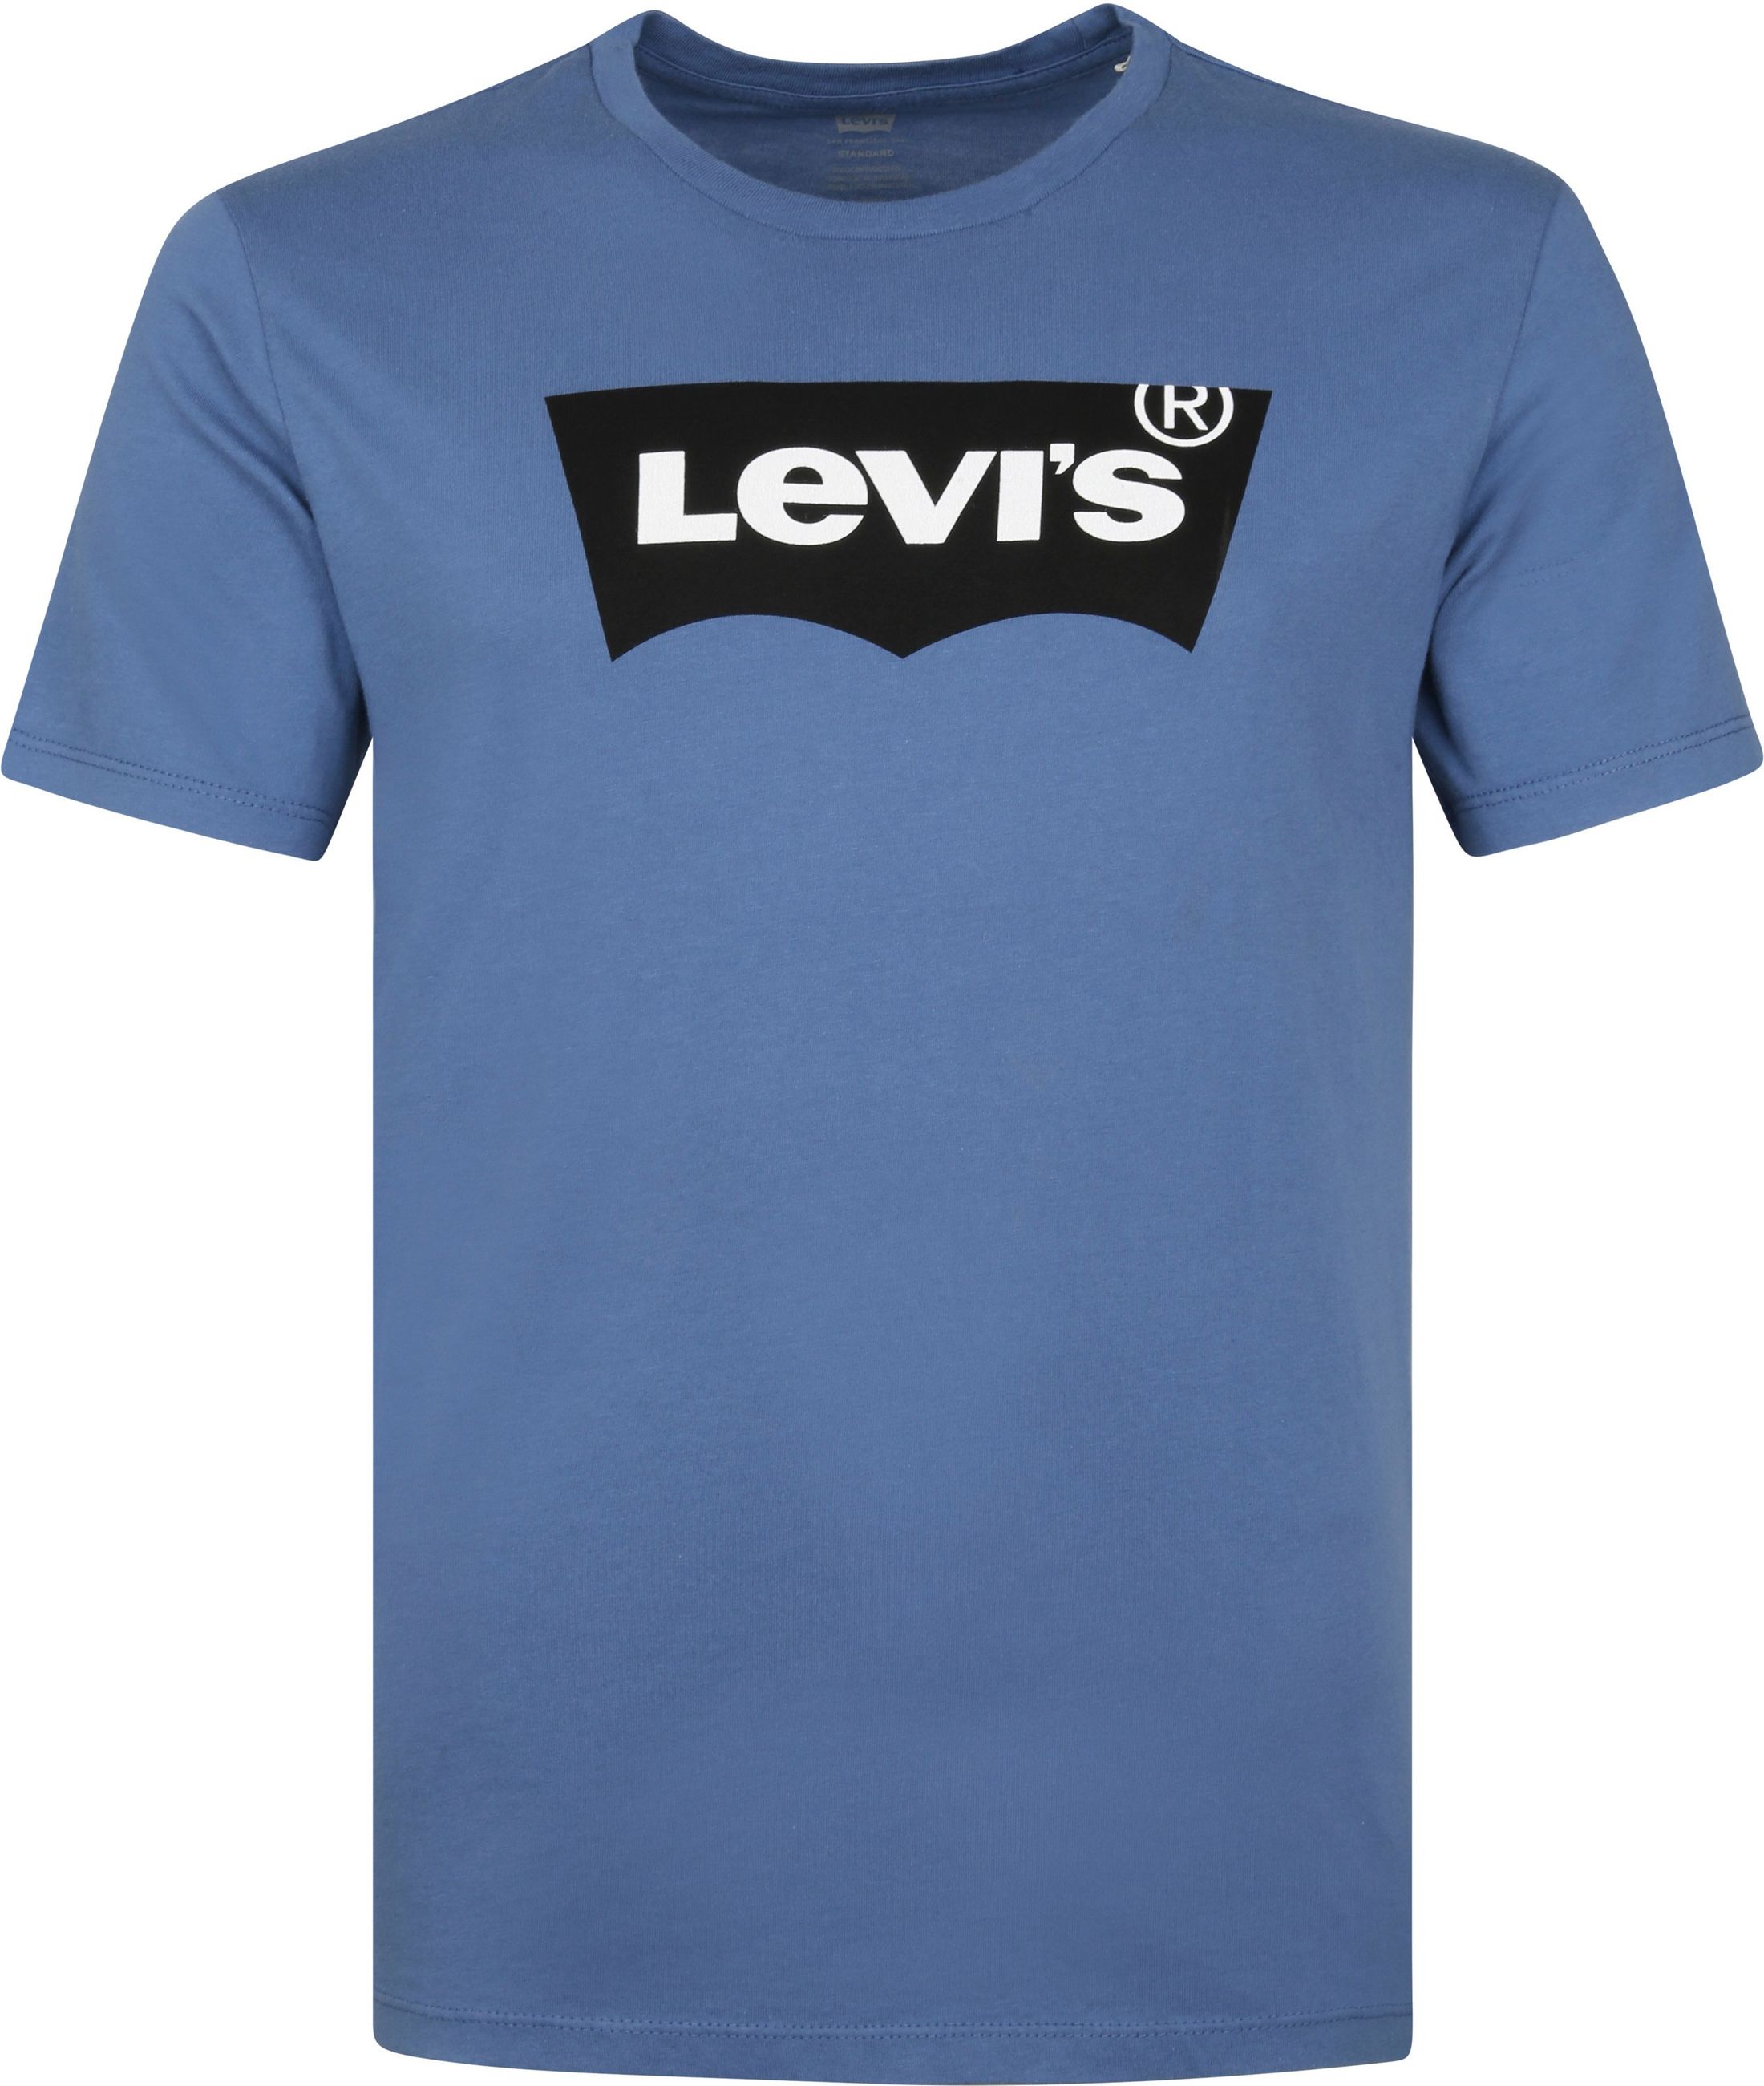 Levi's T Shirt Graphic Logo Mid Blue size M